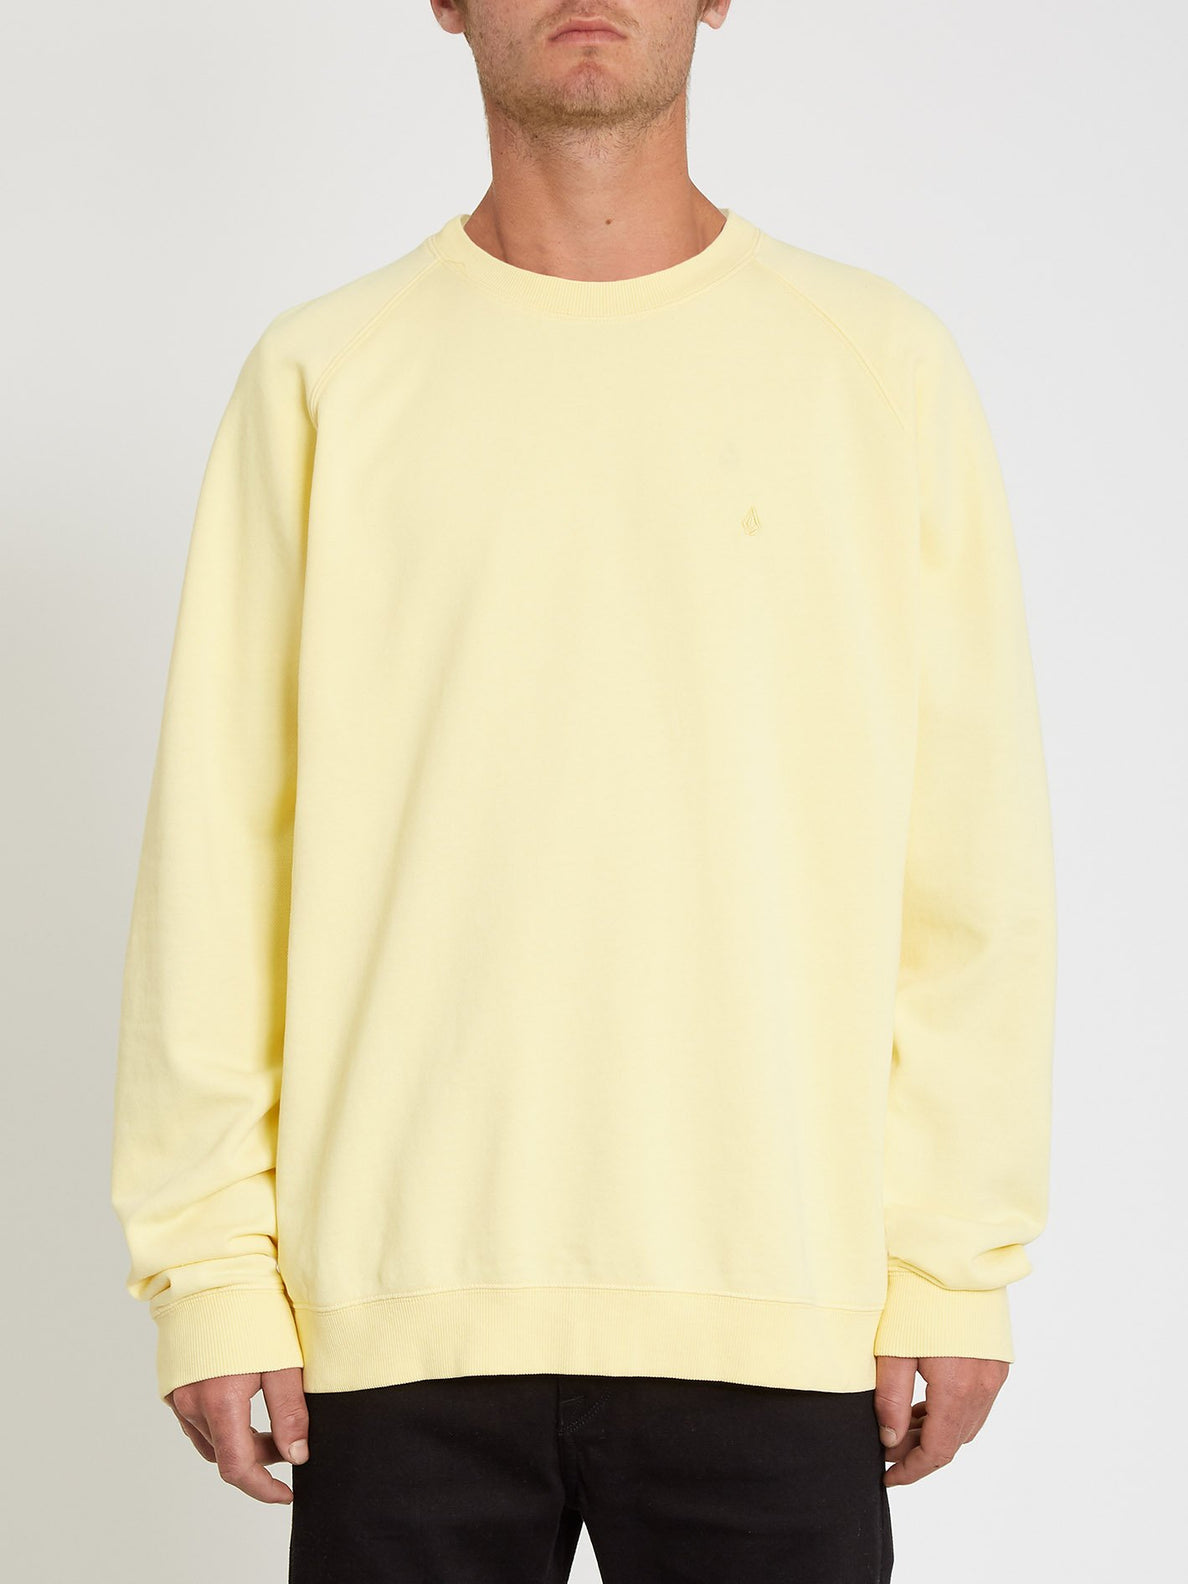 Freeleven Sweatshirt - Dawn Yellow (A4612101_DNY) [F]